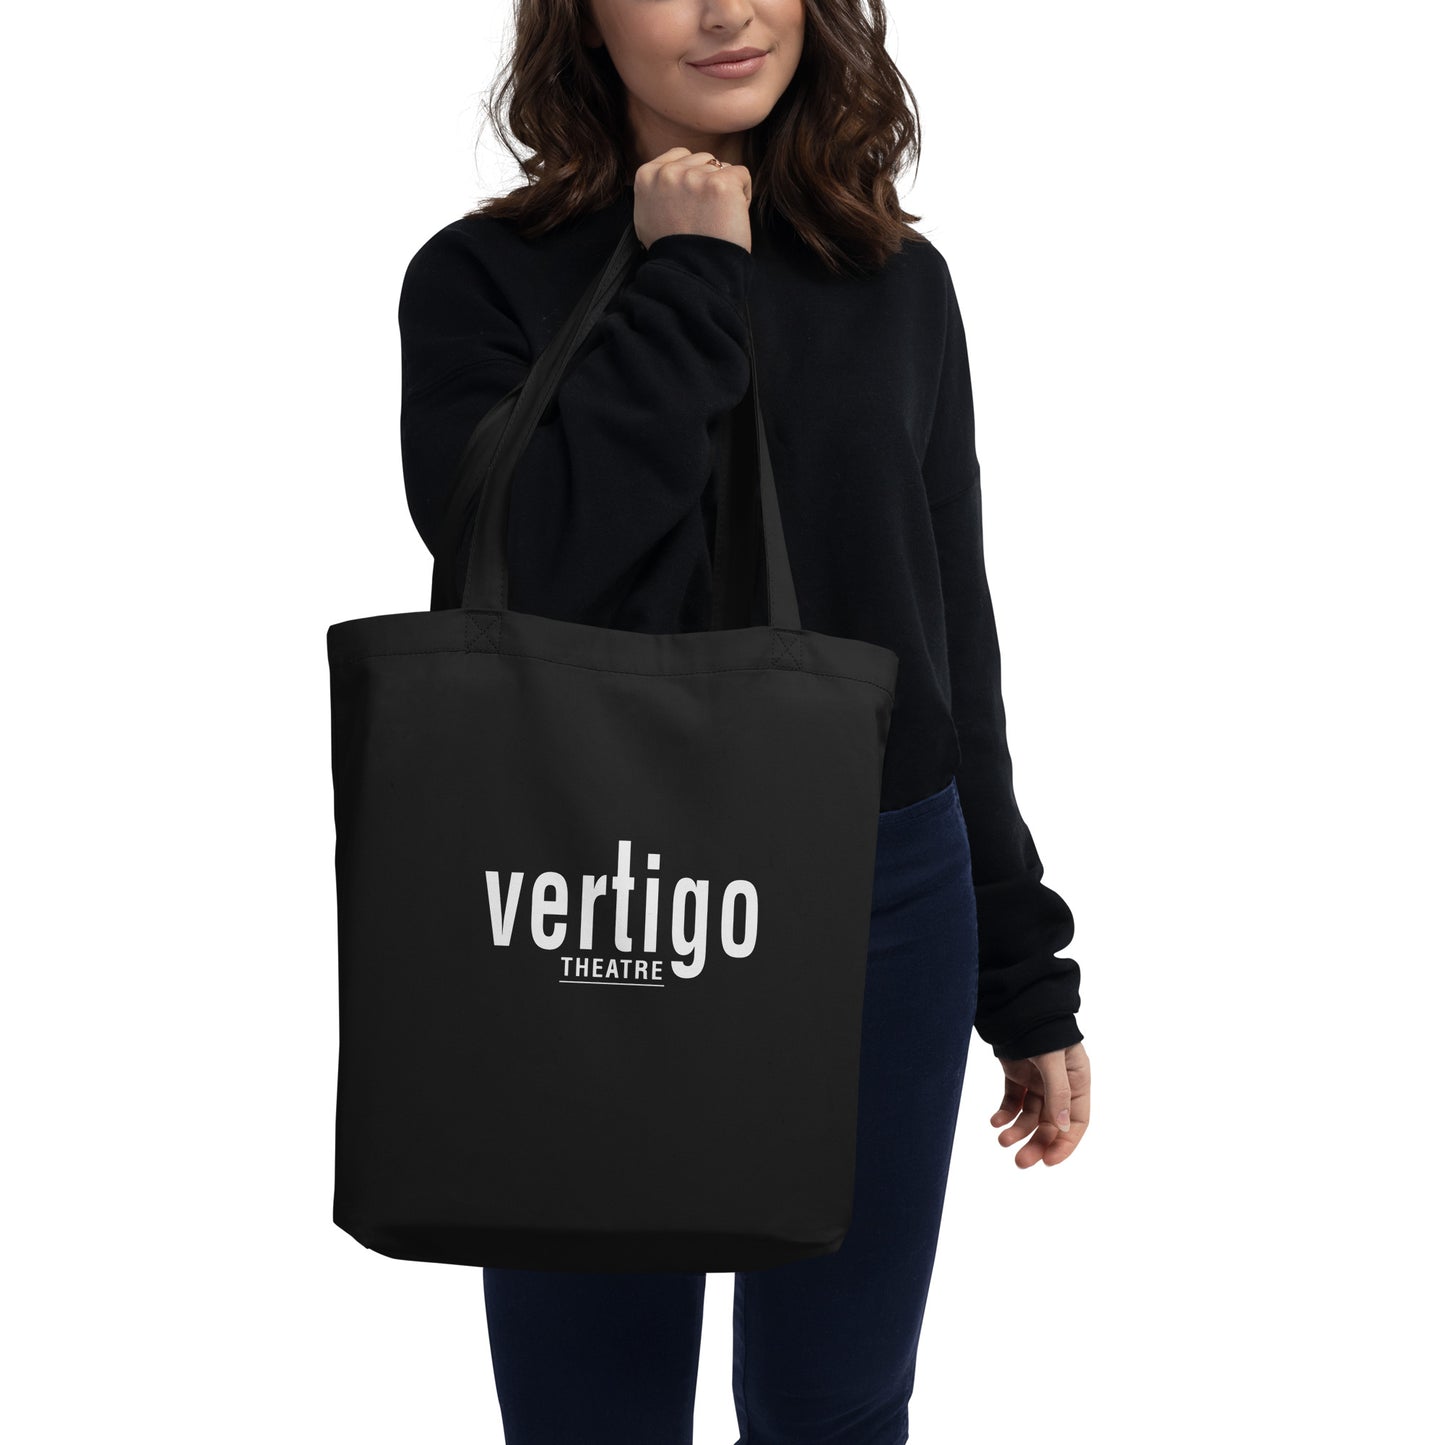 Vertigo Branded Eco Tote Bag